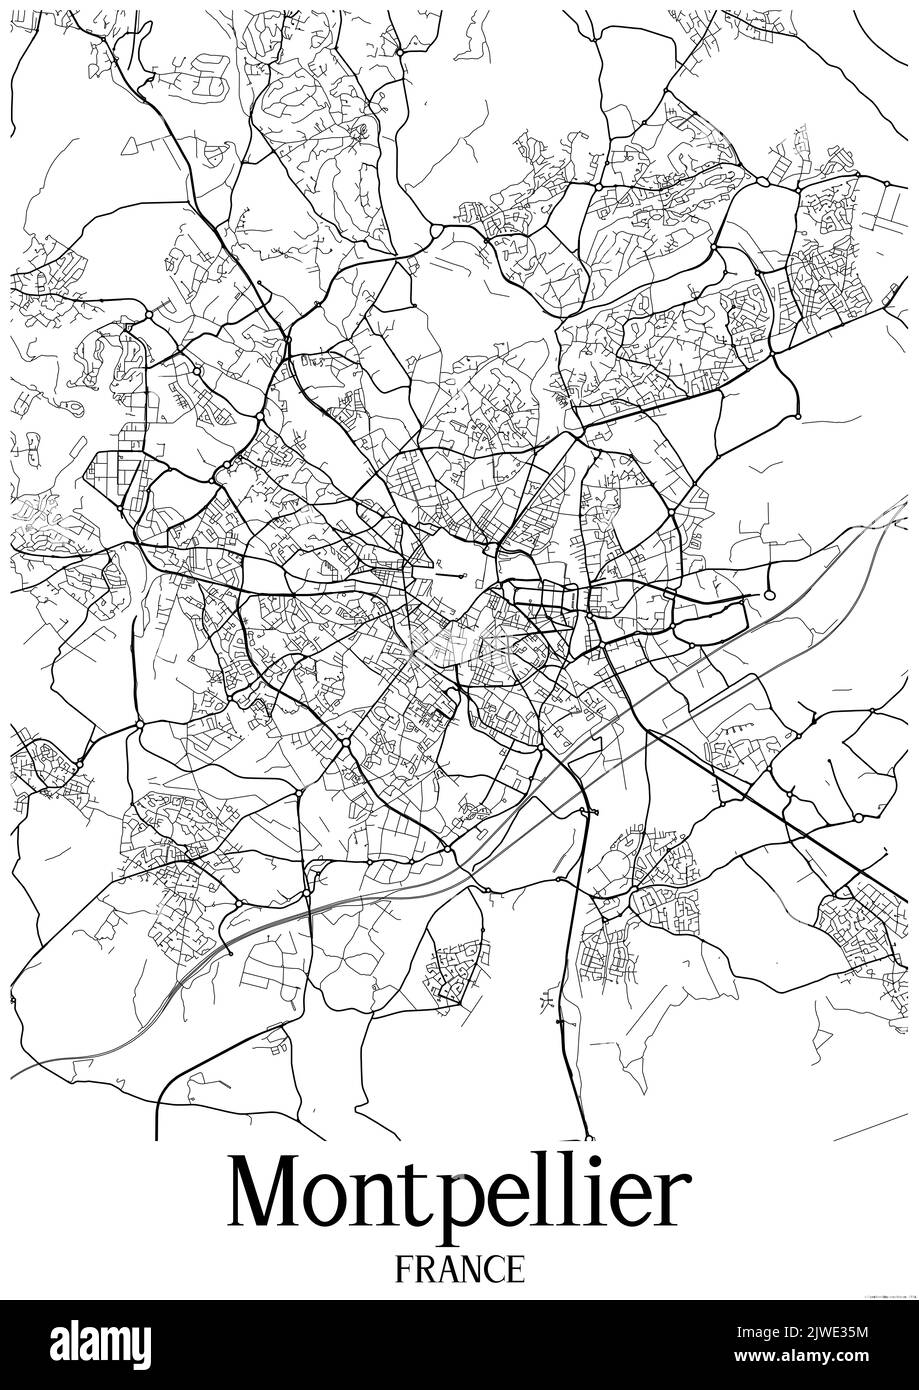 Klassische Schwarz-Weiß-Stadtkarte von Montpellier Frankreich.Diese Karte enthält geografische Linien für Haupt- und Nebenstraßen. Stockfoto